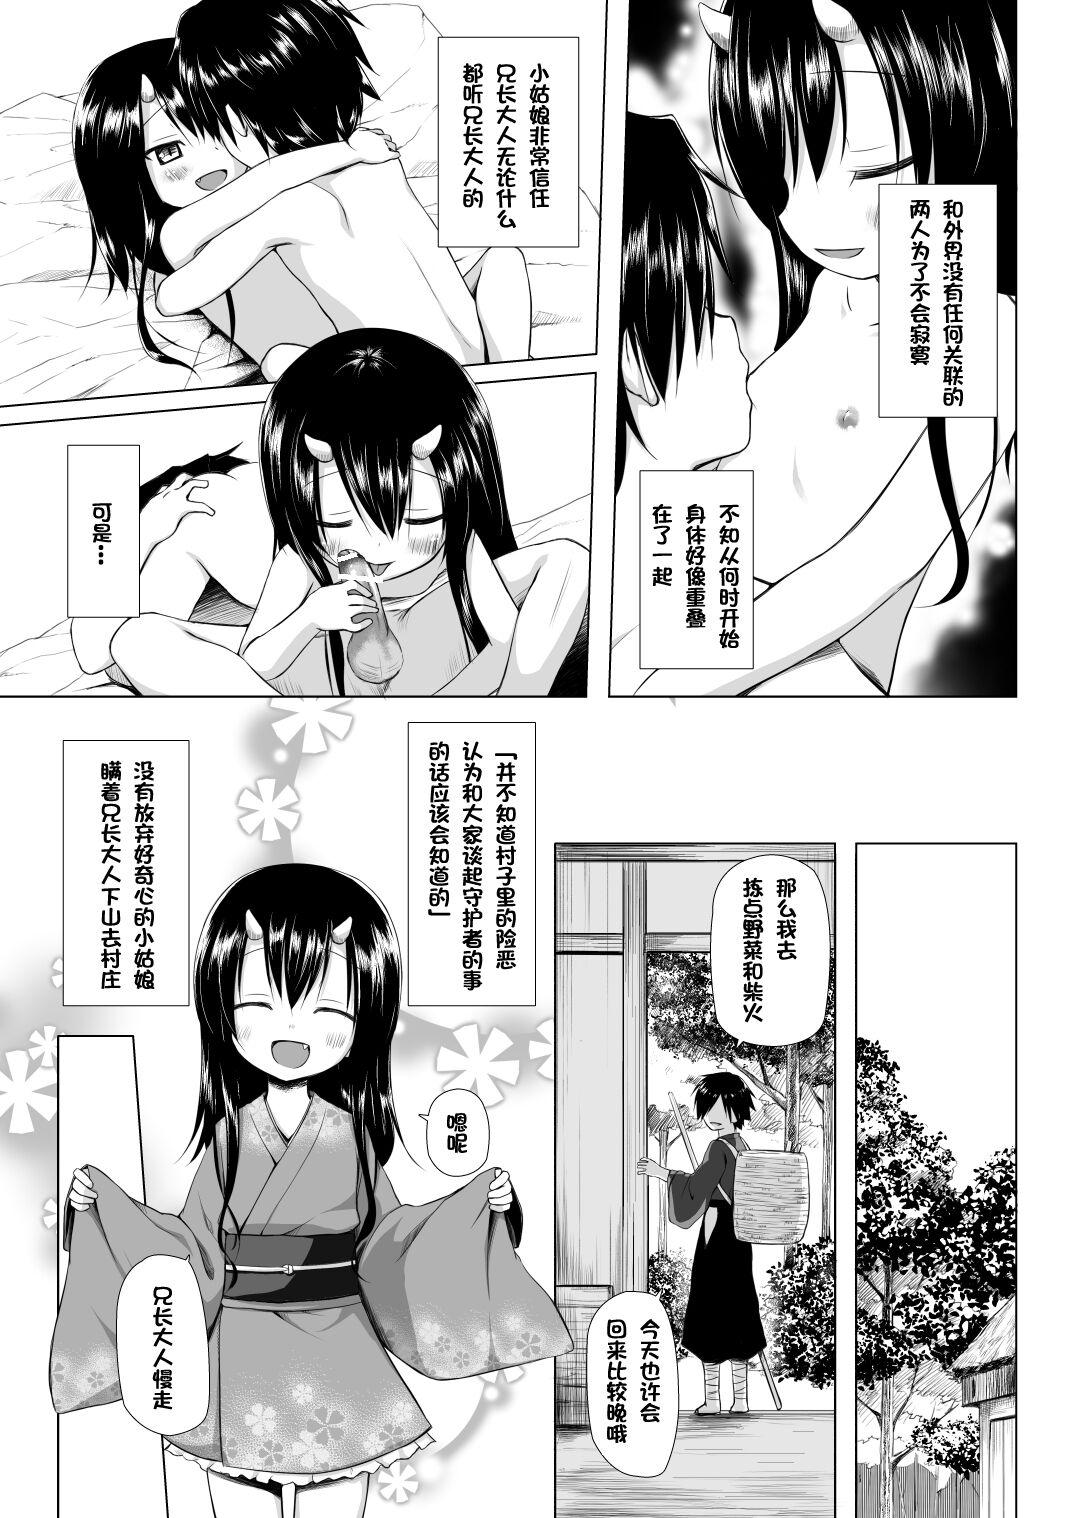 Gordita Monokemono San-ya - Original Rubia - Page 4